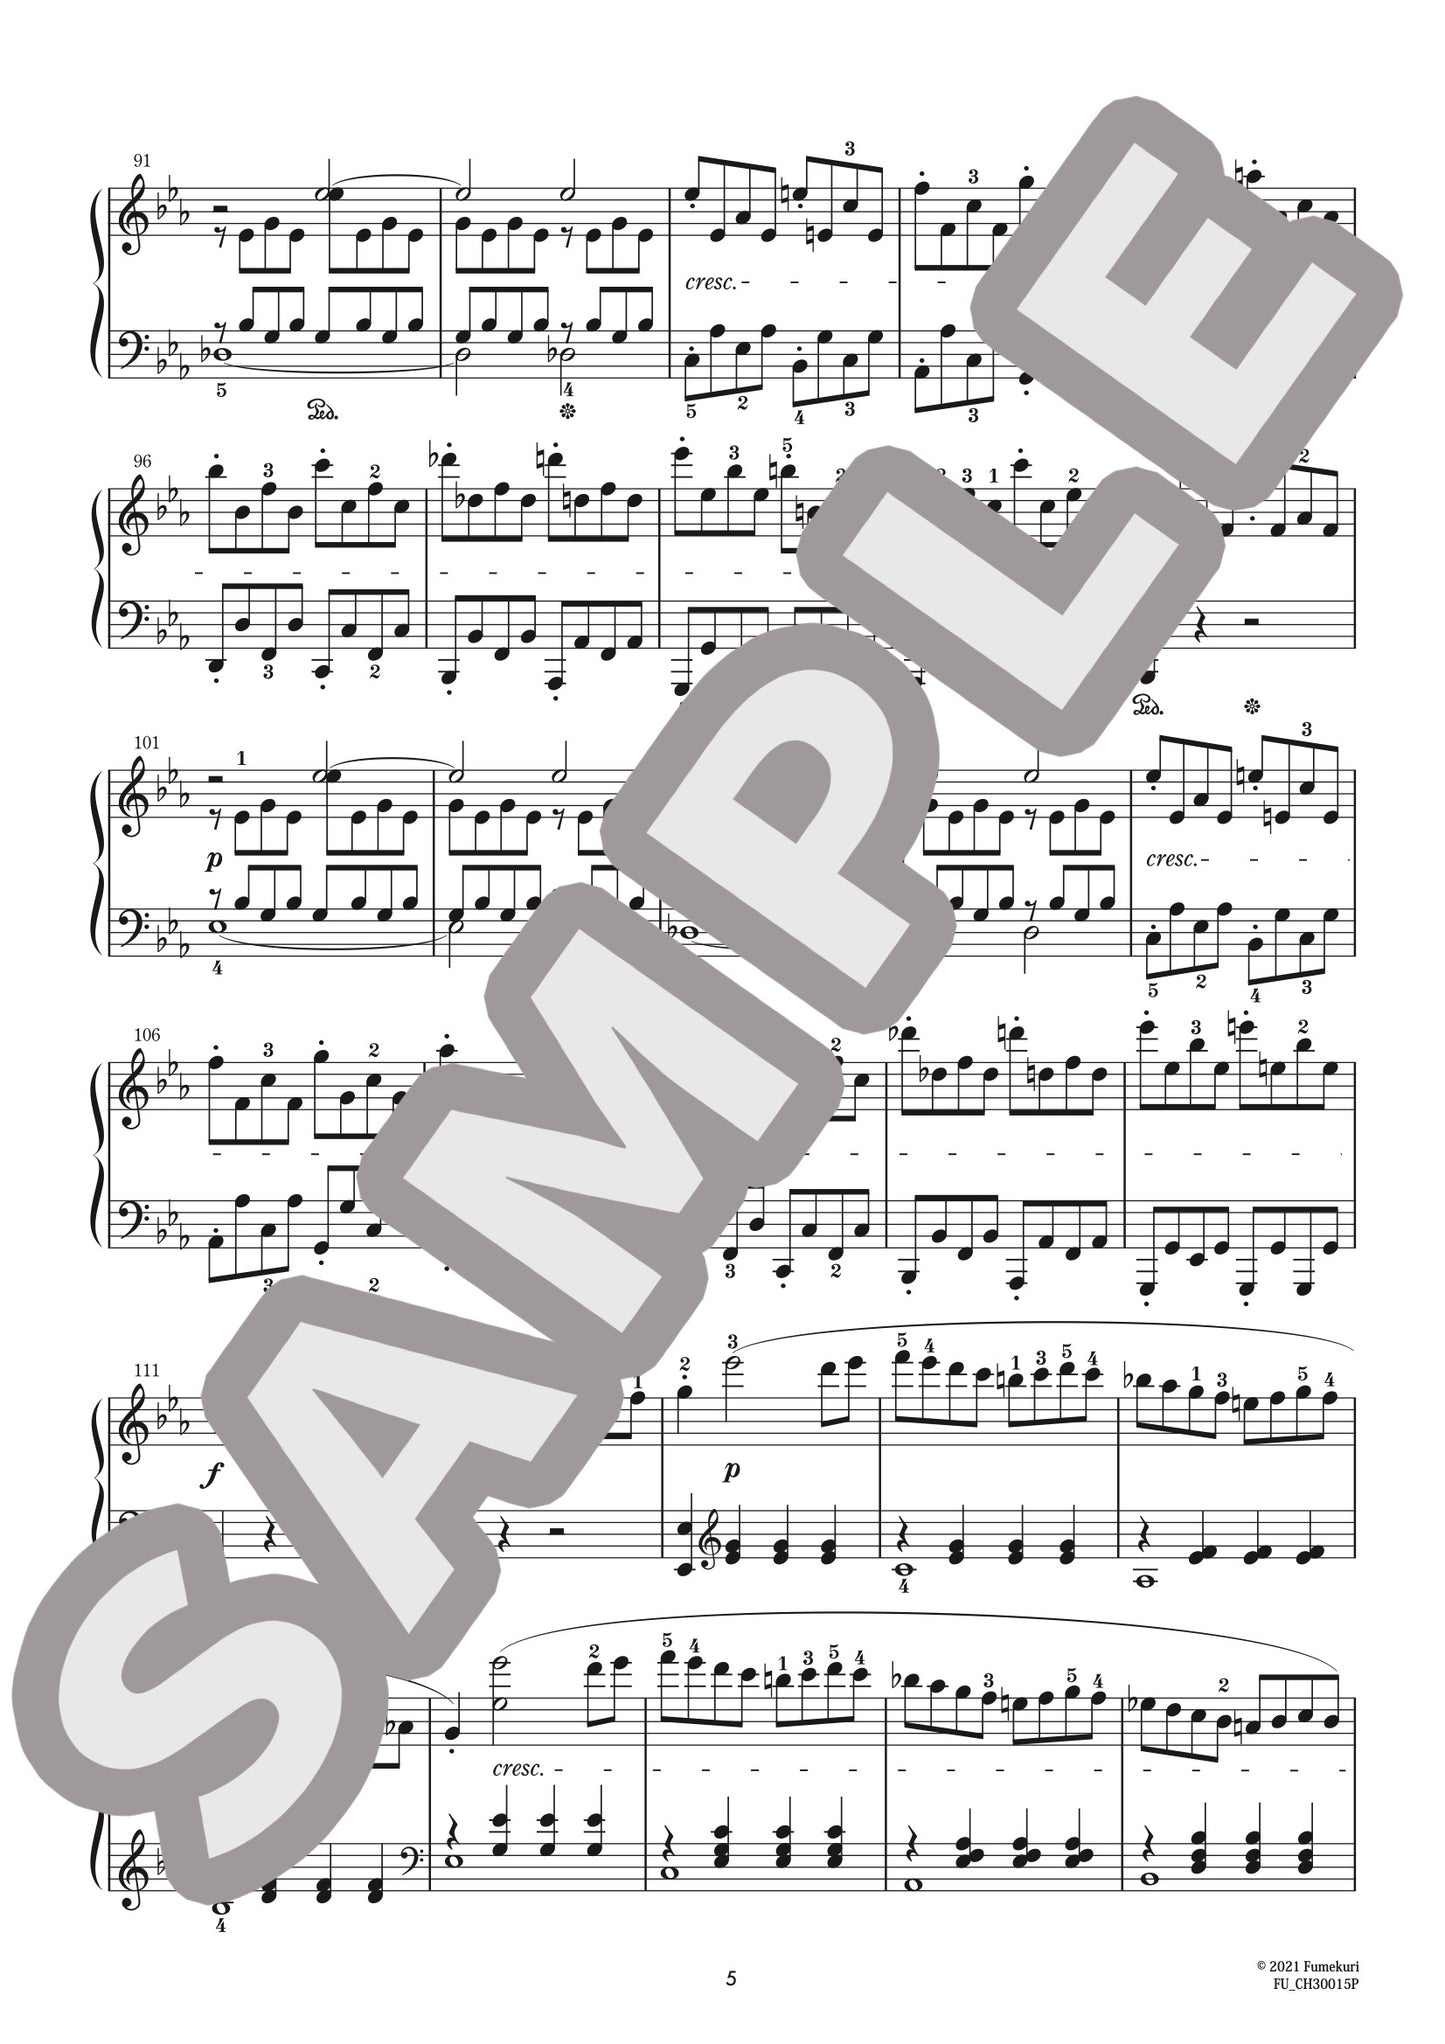 ピアノ･ソナタ 第8番 『悲愴』（ルートヴィヒ・ヴァン・ベートーヴェン) / クラシック・オリジナル楽曲【上級】